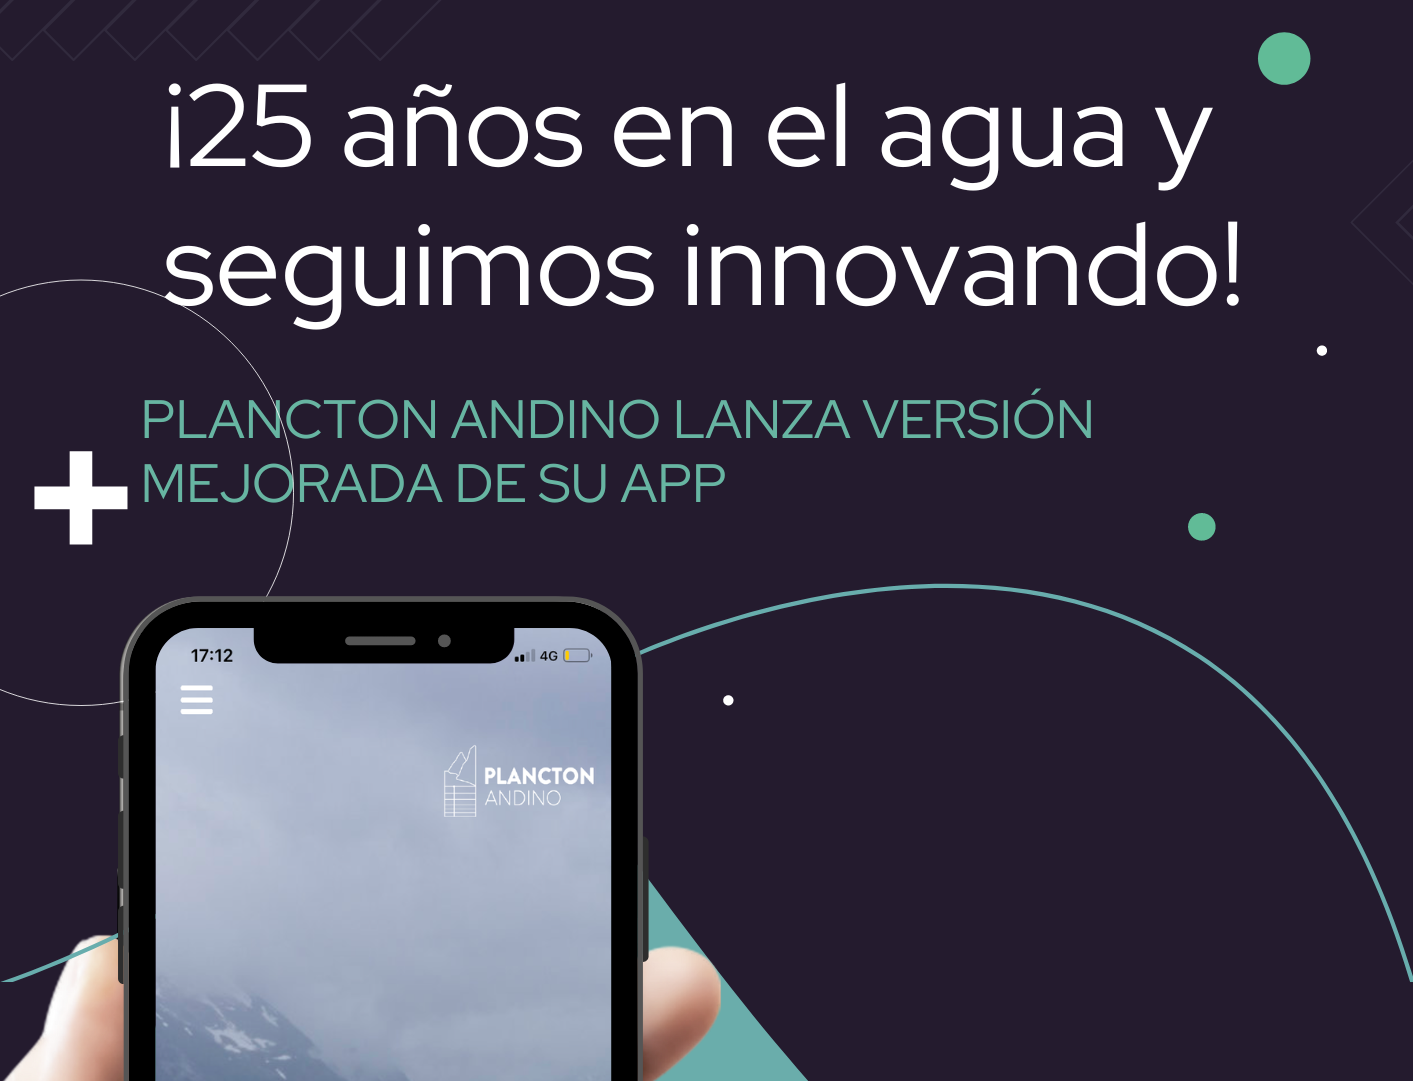 Plancton Andino lanza nueva versión de su App corporativa